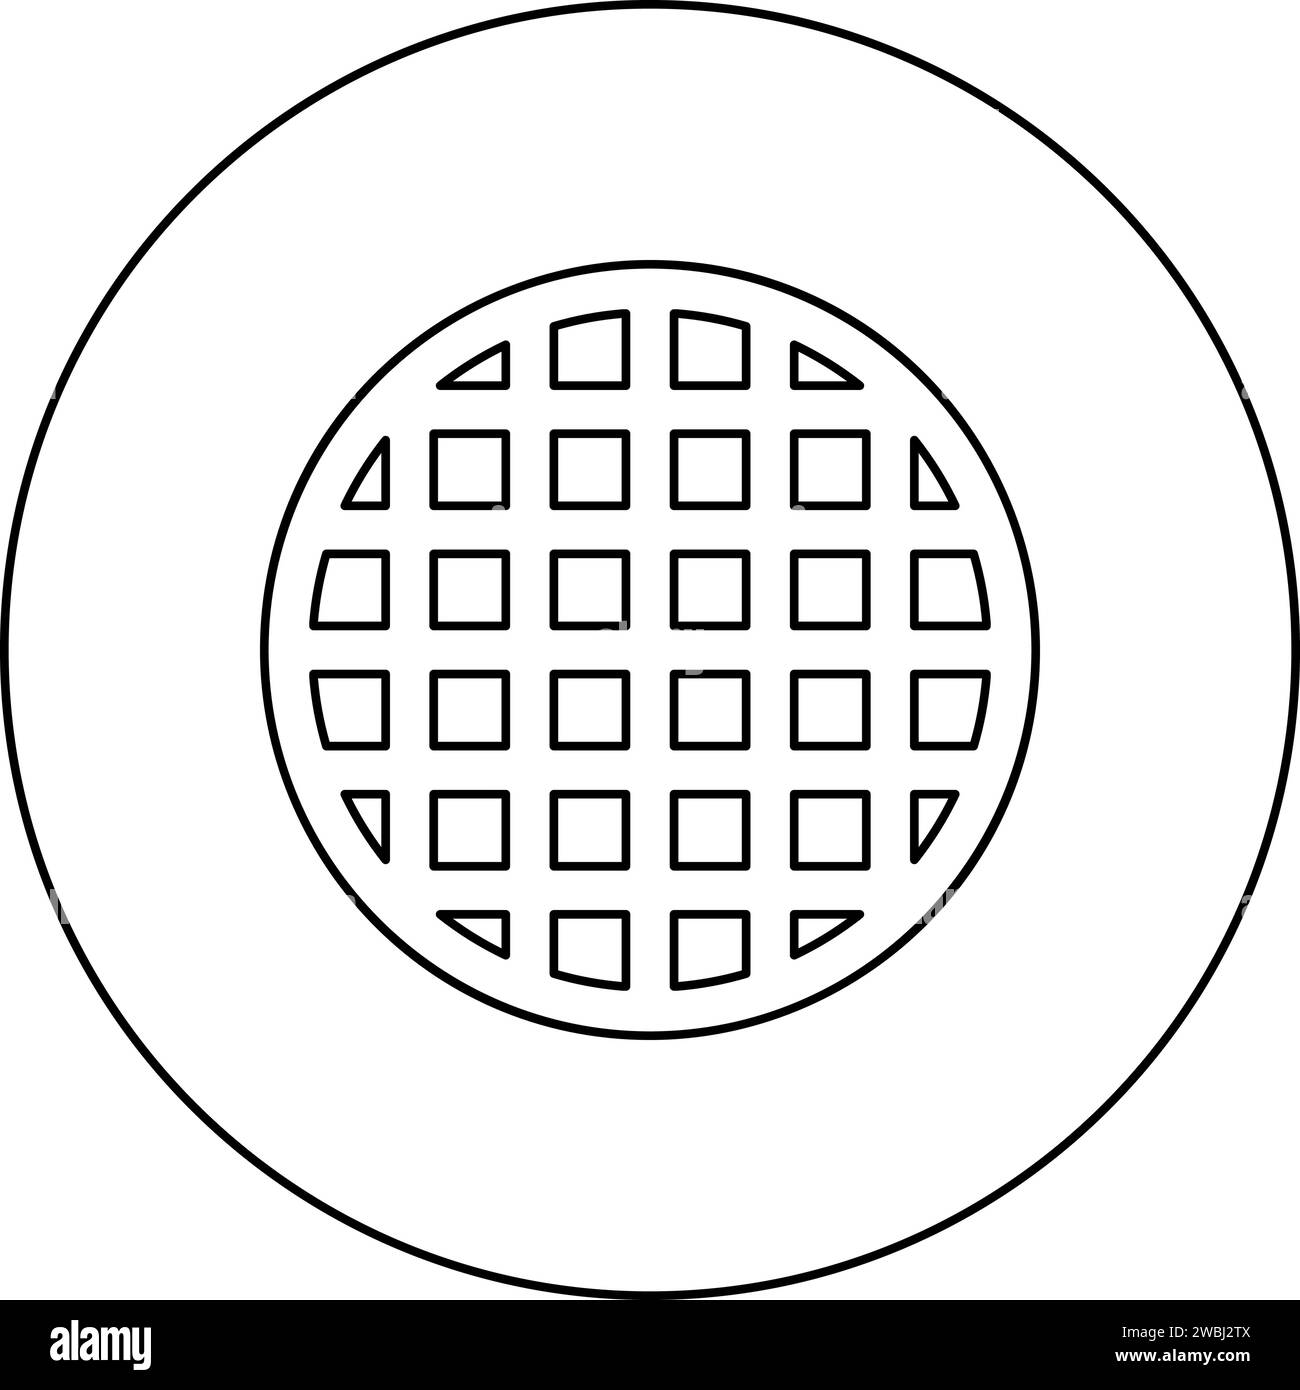 Grille de grille treillis treillis treillis treillis grillage grill grill grill surface de cuisson icône de forme ronde dans le cercle rond couleur noire illustration vectorielle contour de l'image Illustration de Vecteur